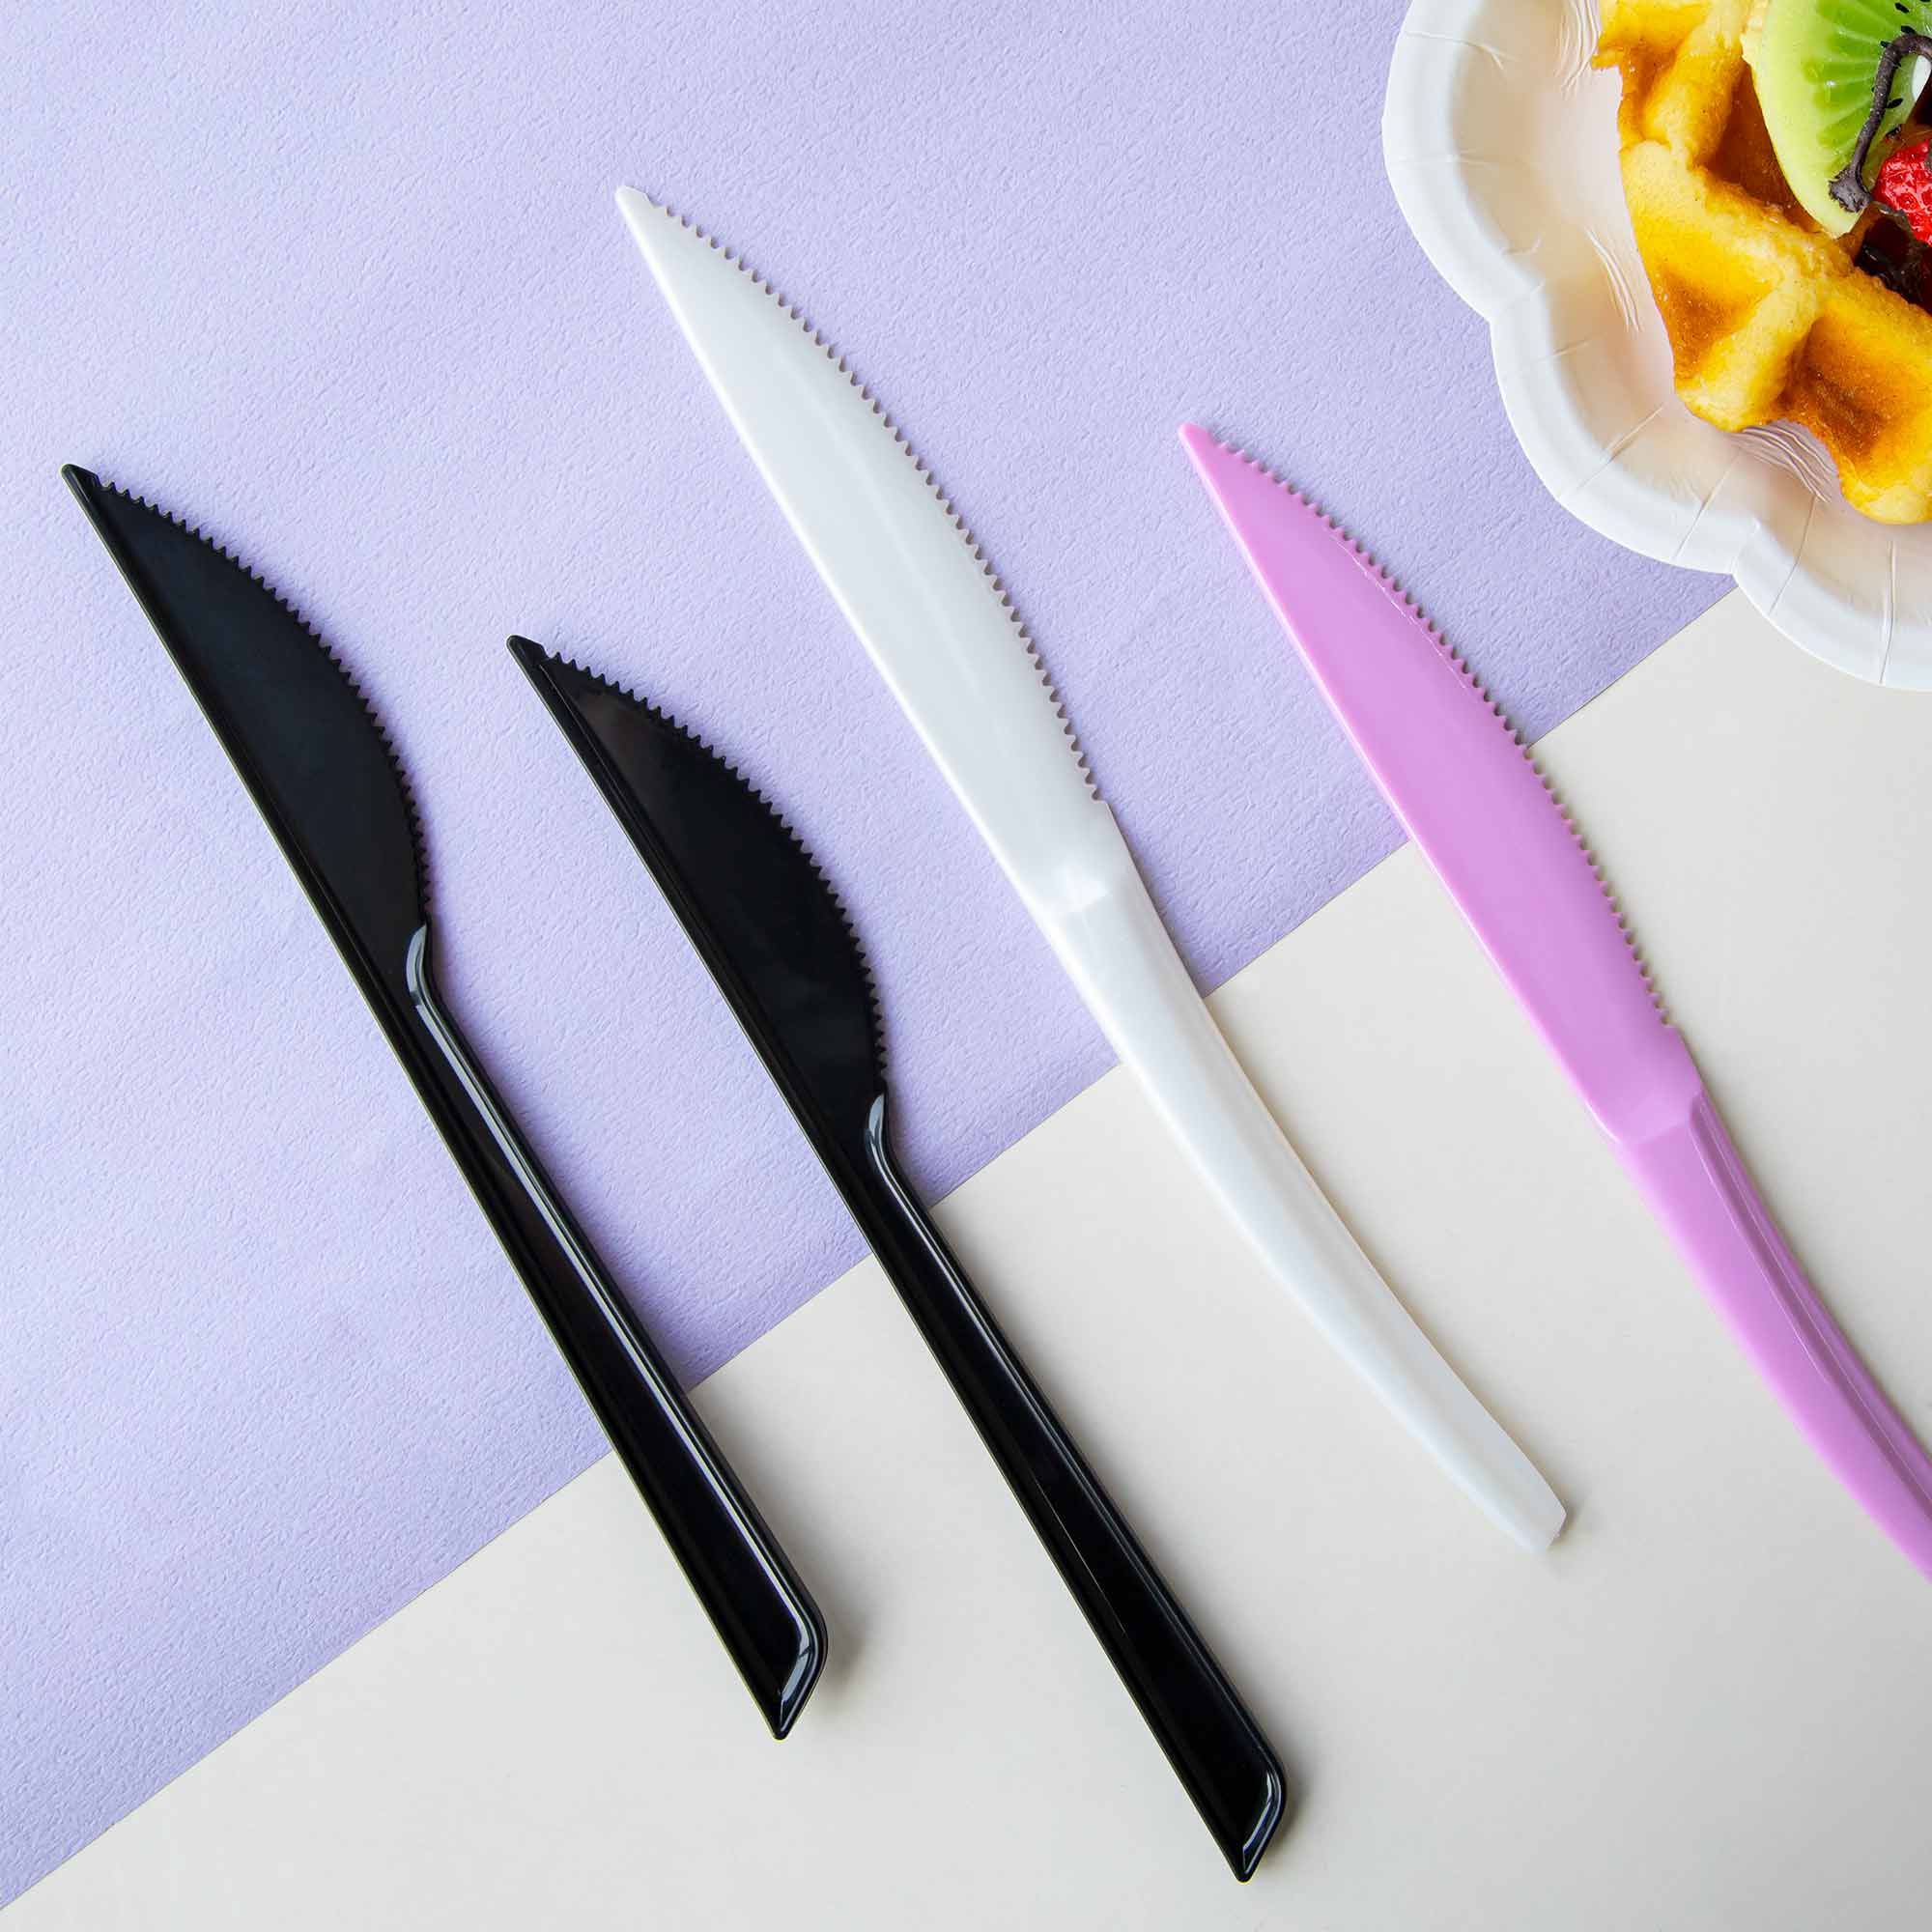 プラスチックナイフ、使い捨てナイフ、使い捨てナイフサブ台湾の高品質プラスチック使い捨て食器そしてカスタマイズプラスチック製品メーカー | 苔曙企業股份有限公司 22493485プラスチックナイフ| プロフェッショナルなカスタム製造